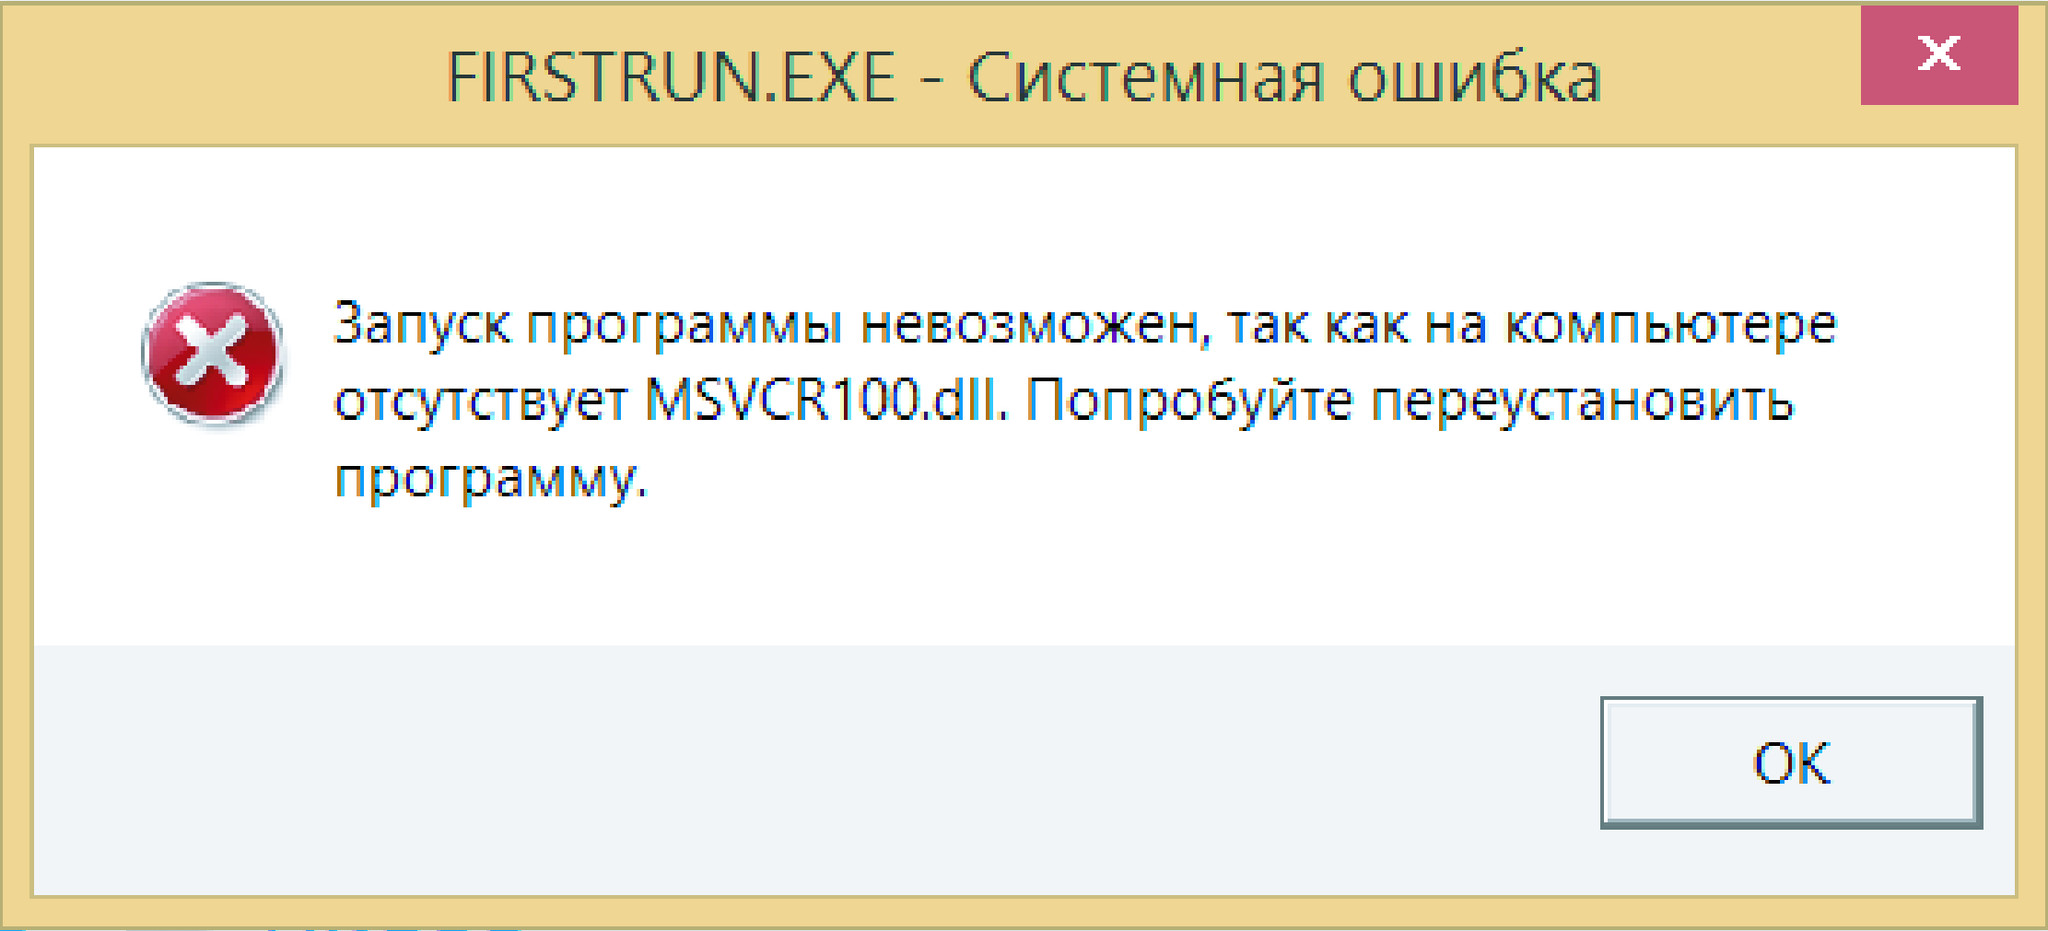 Не удалось загрузить библиотеку dll. Ошибка msvcr100.dll. Отсутствует файл dll. Запуск программы невозможен отсутствует msvcr100 dll. Запуск программы.